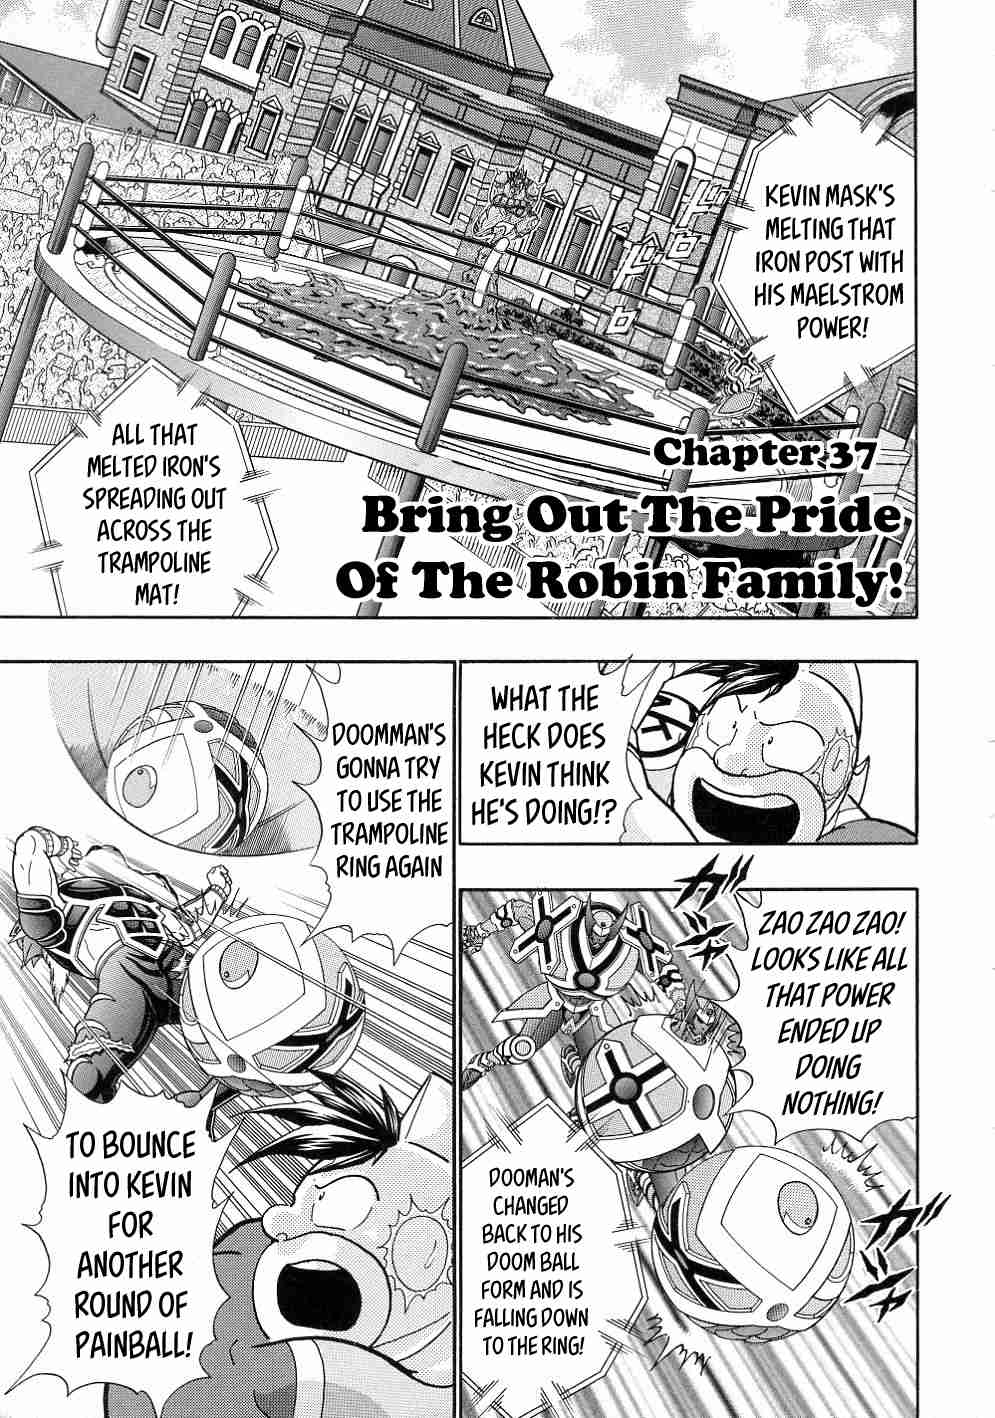 Kinnikuman II Sei: All Choujin Daishingeki Vol. 3 Ch. 37 Bring Out The Pride Of The Robin Family!